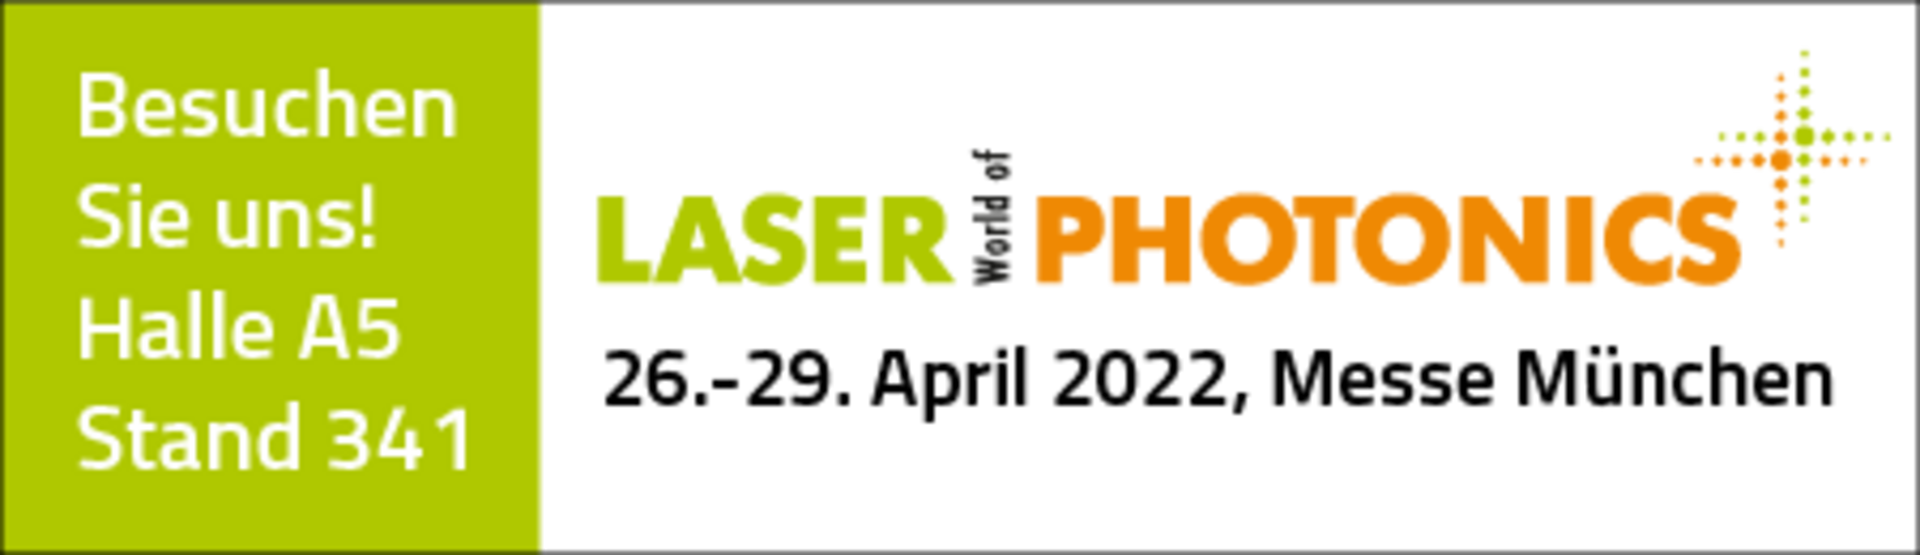 LASER World of Photonics - Besuchen Sie Nanoscribe in Halle A5 am Stand 341